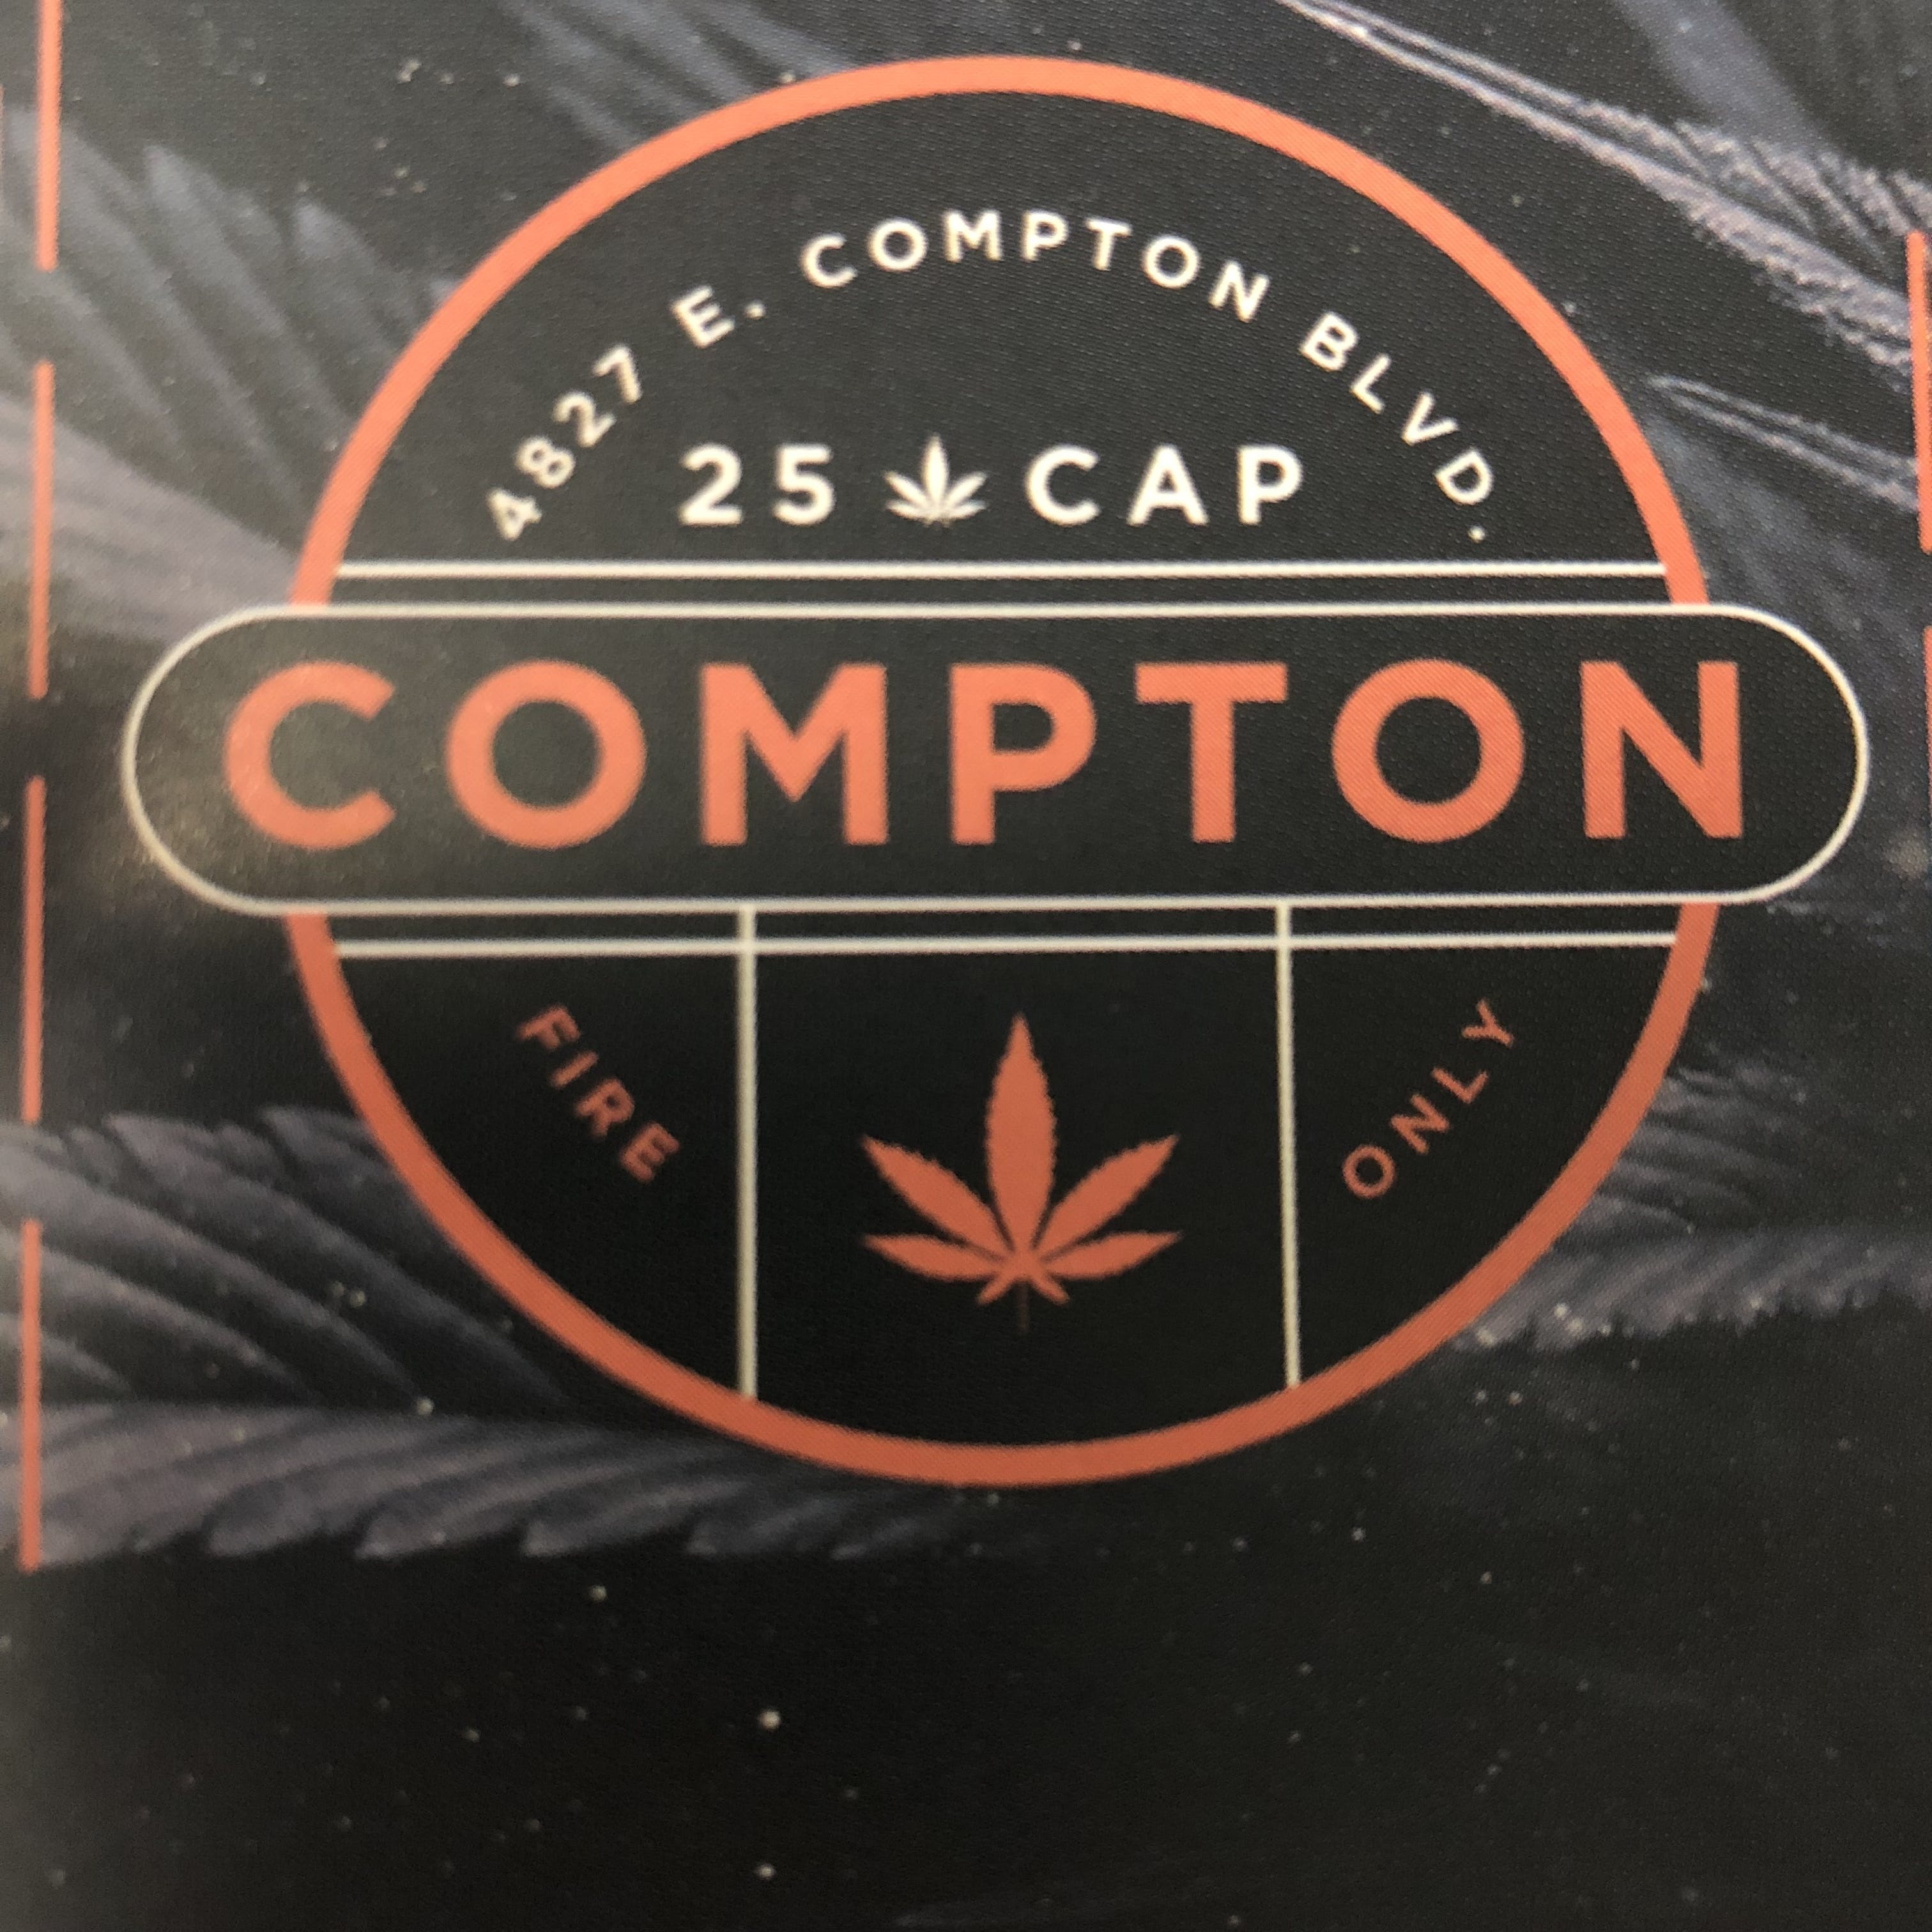 Compton 25 Cap - Medical Marijuana Doctors - Cannabizme.com